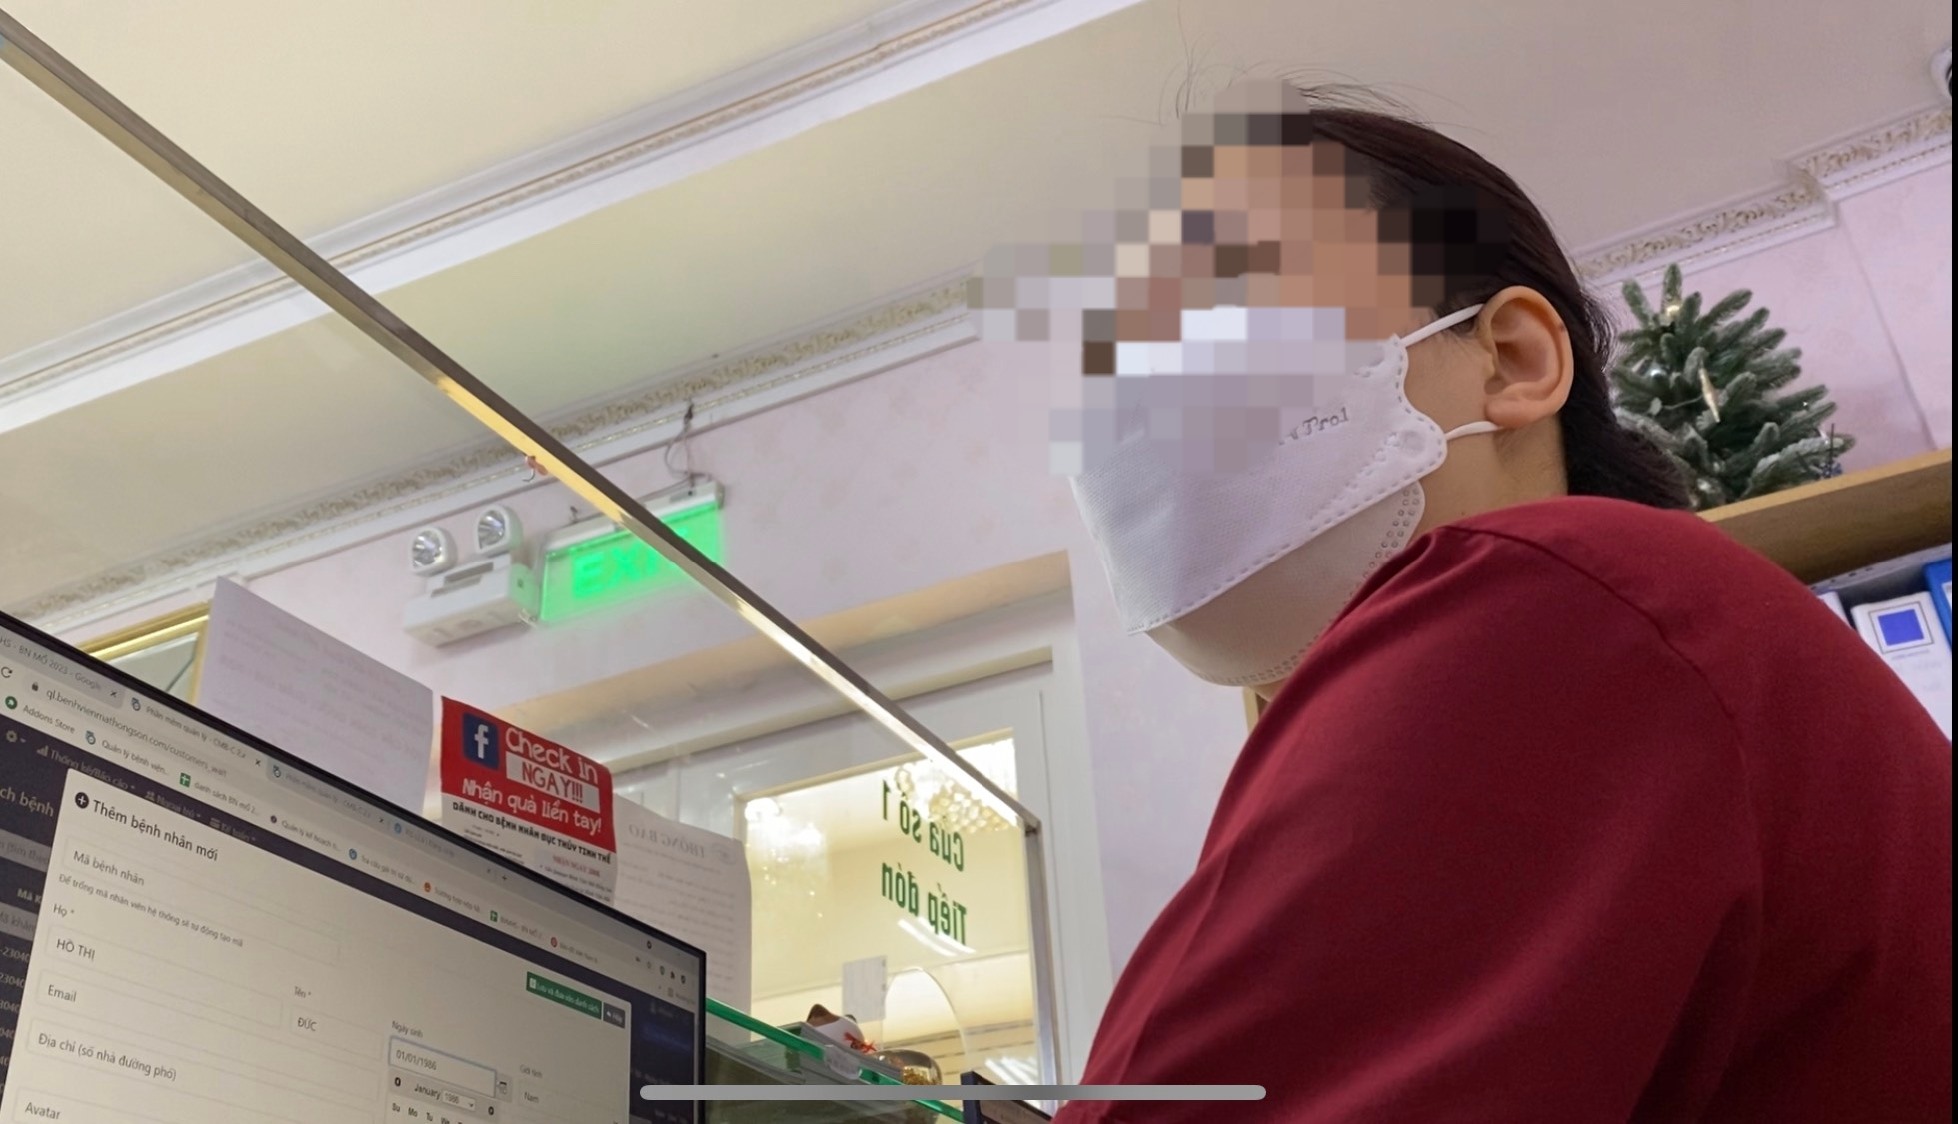 Nhân viên Bệnh viện Hồng Sơn khẳng định bác sĩ nào ở BV Mắt TW khám thì sẽ là người mổ trực tiếp cho bệnh nhân ở BV Hồng Sơn, muốn đặt bác sĩ khác mổ cũng không được. Ảnh: PV Lao Động